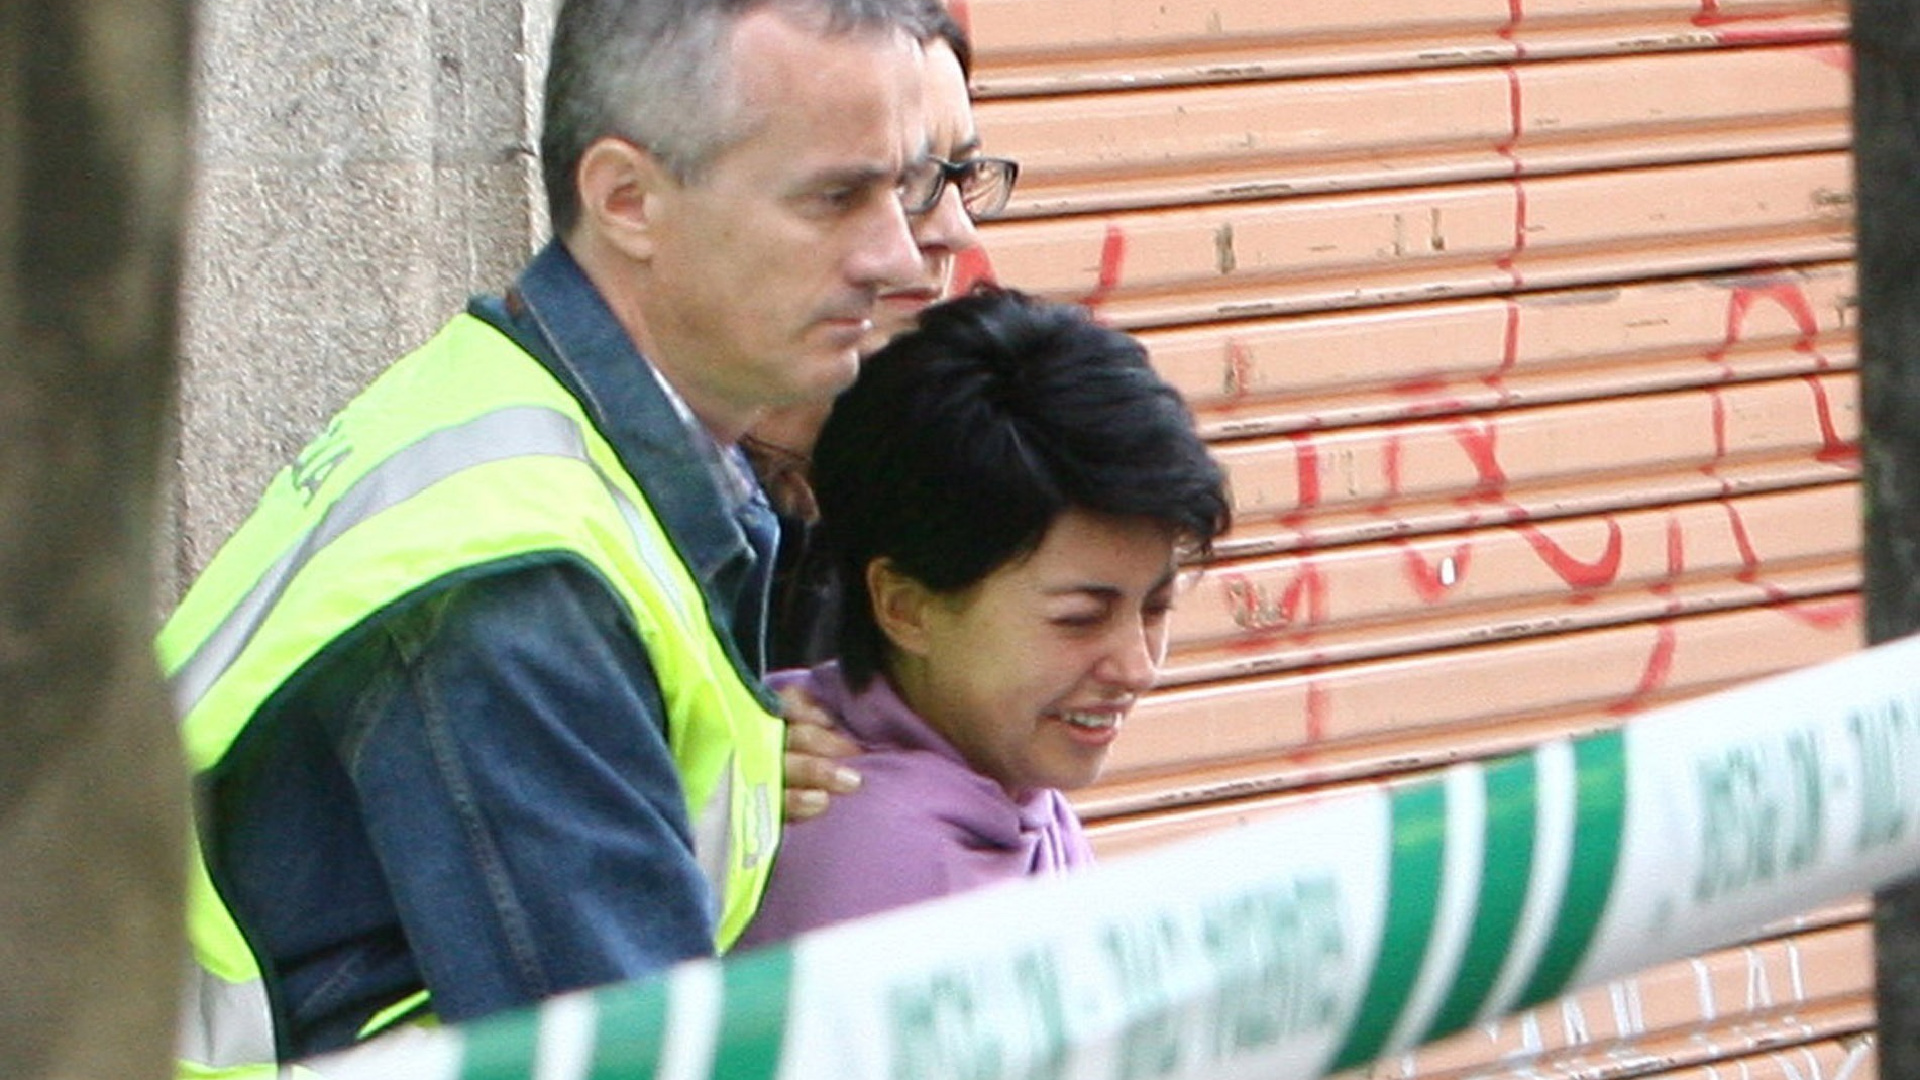 Caso Asunta: a história da menina assassinada pelos pais que chocou a Espanha